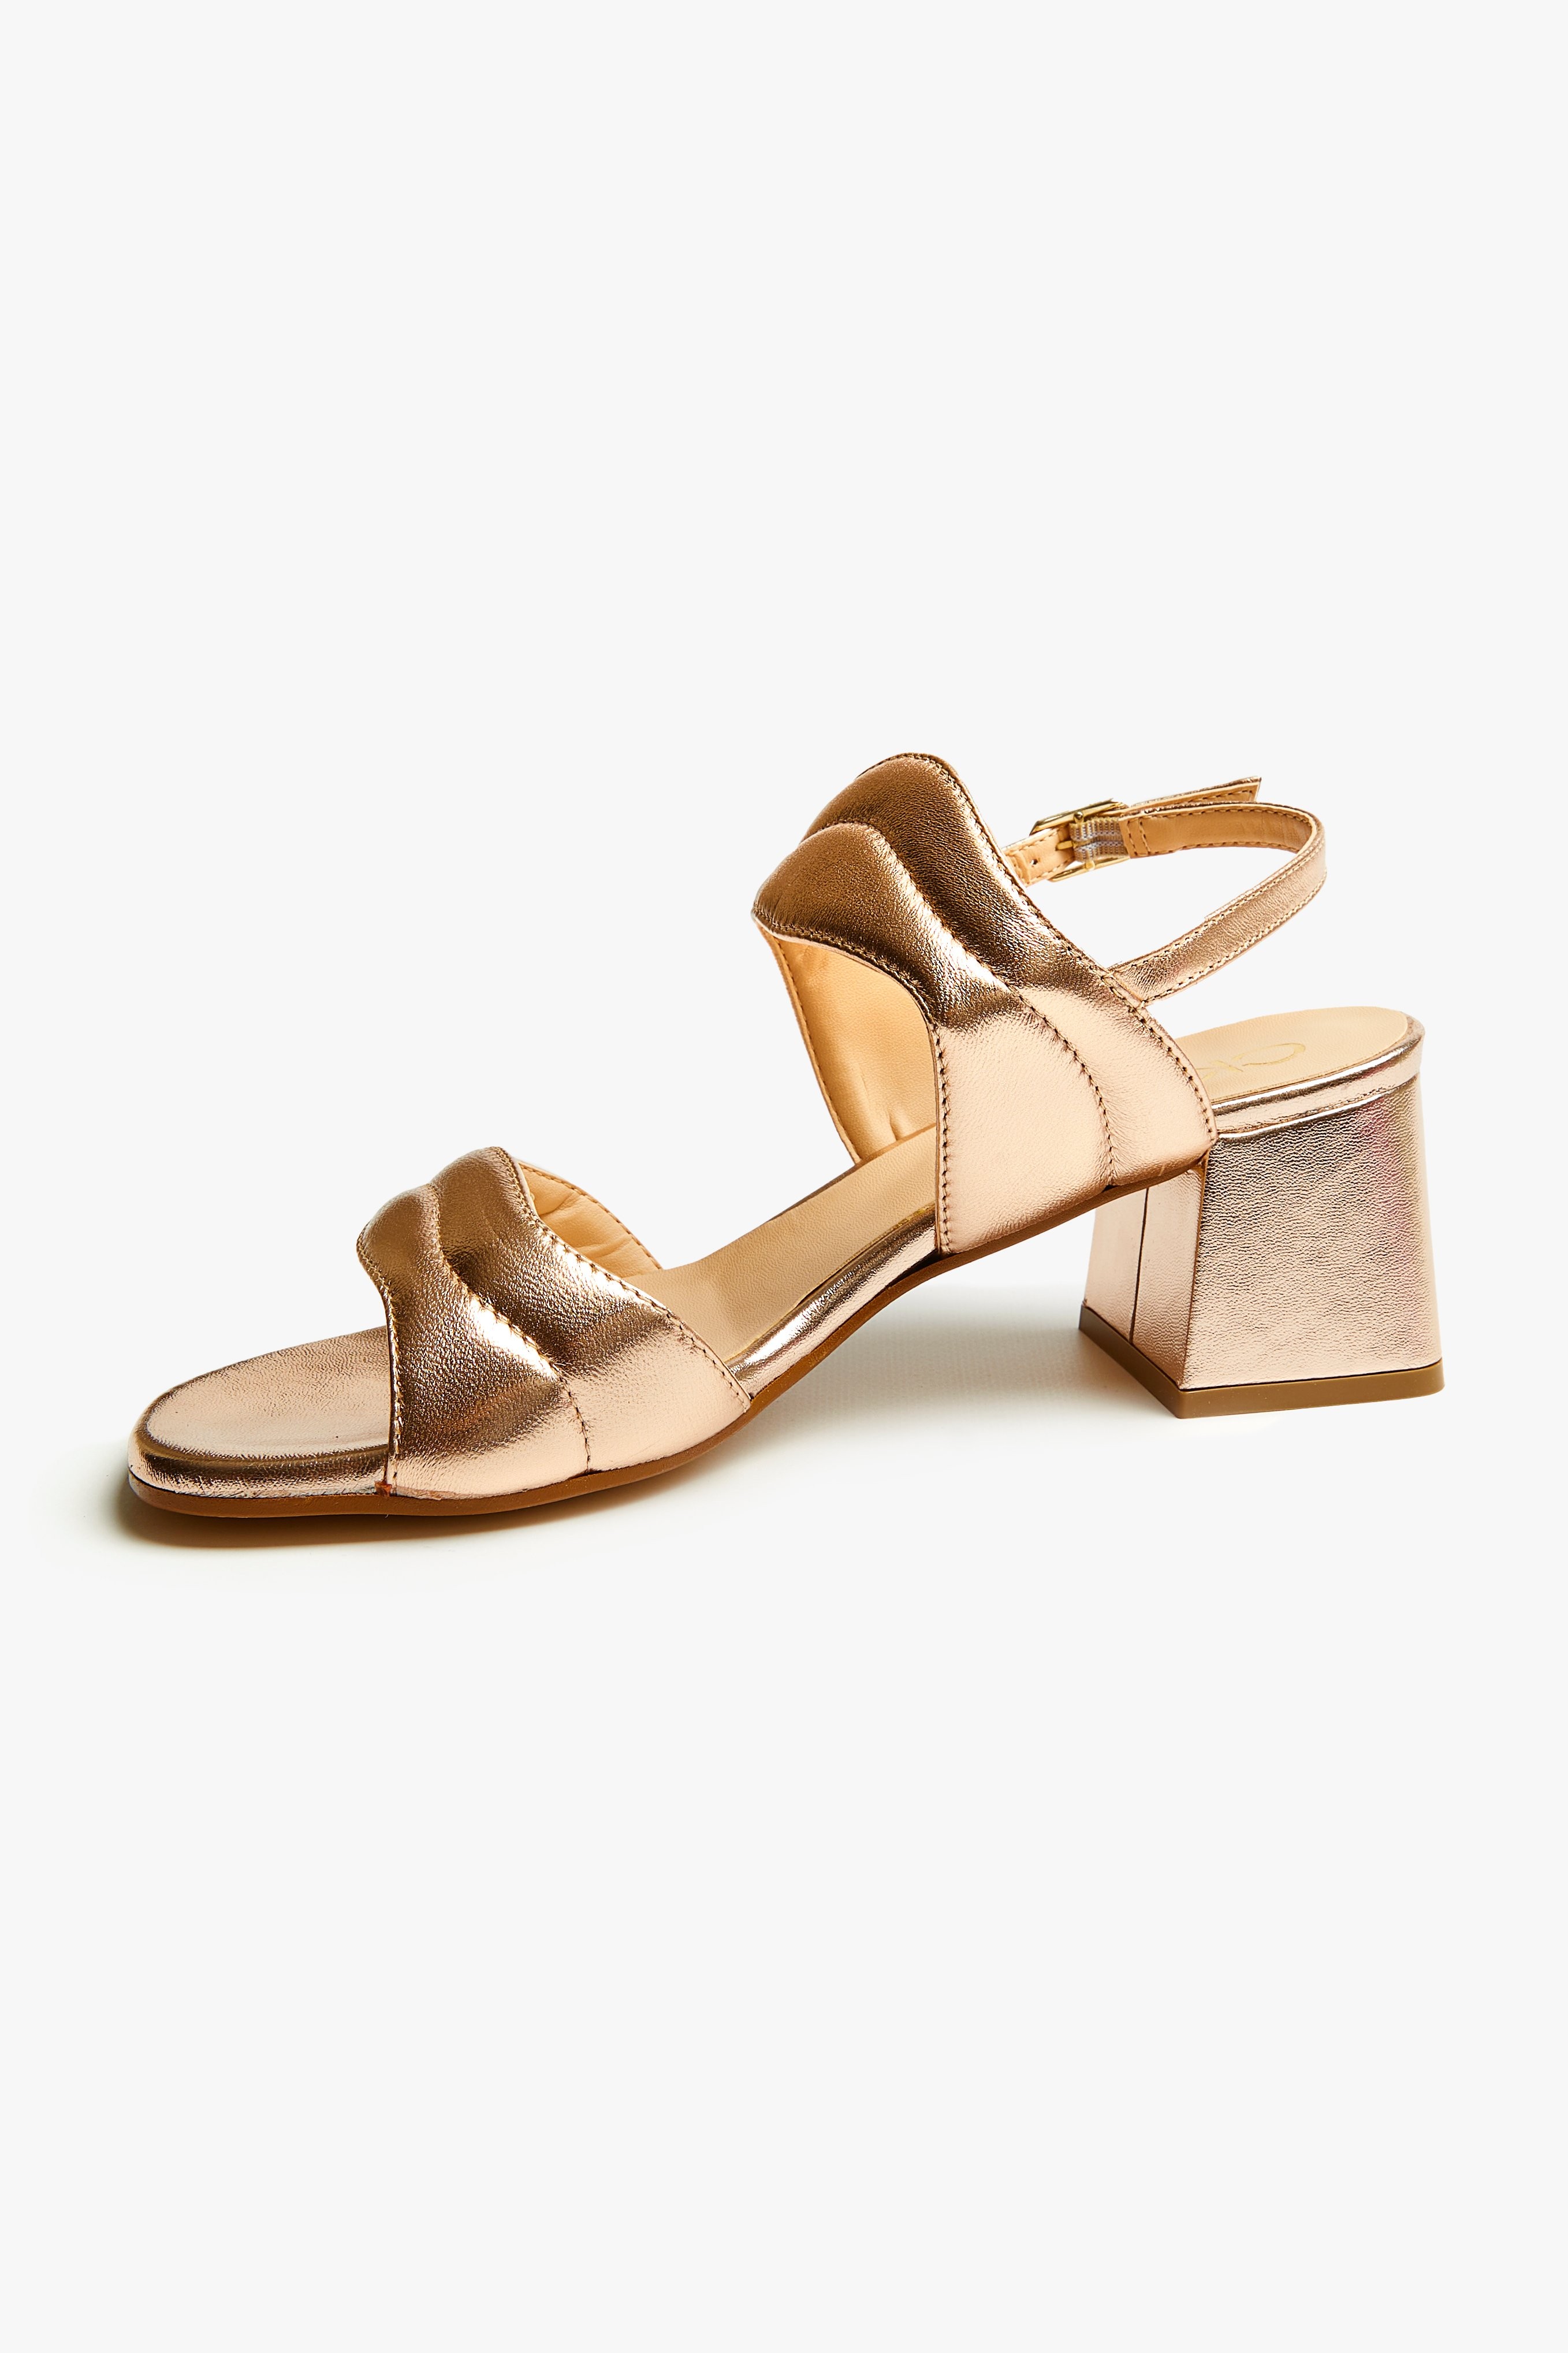 CKS Dames - SHARON3 - sandals - beige